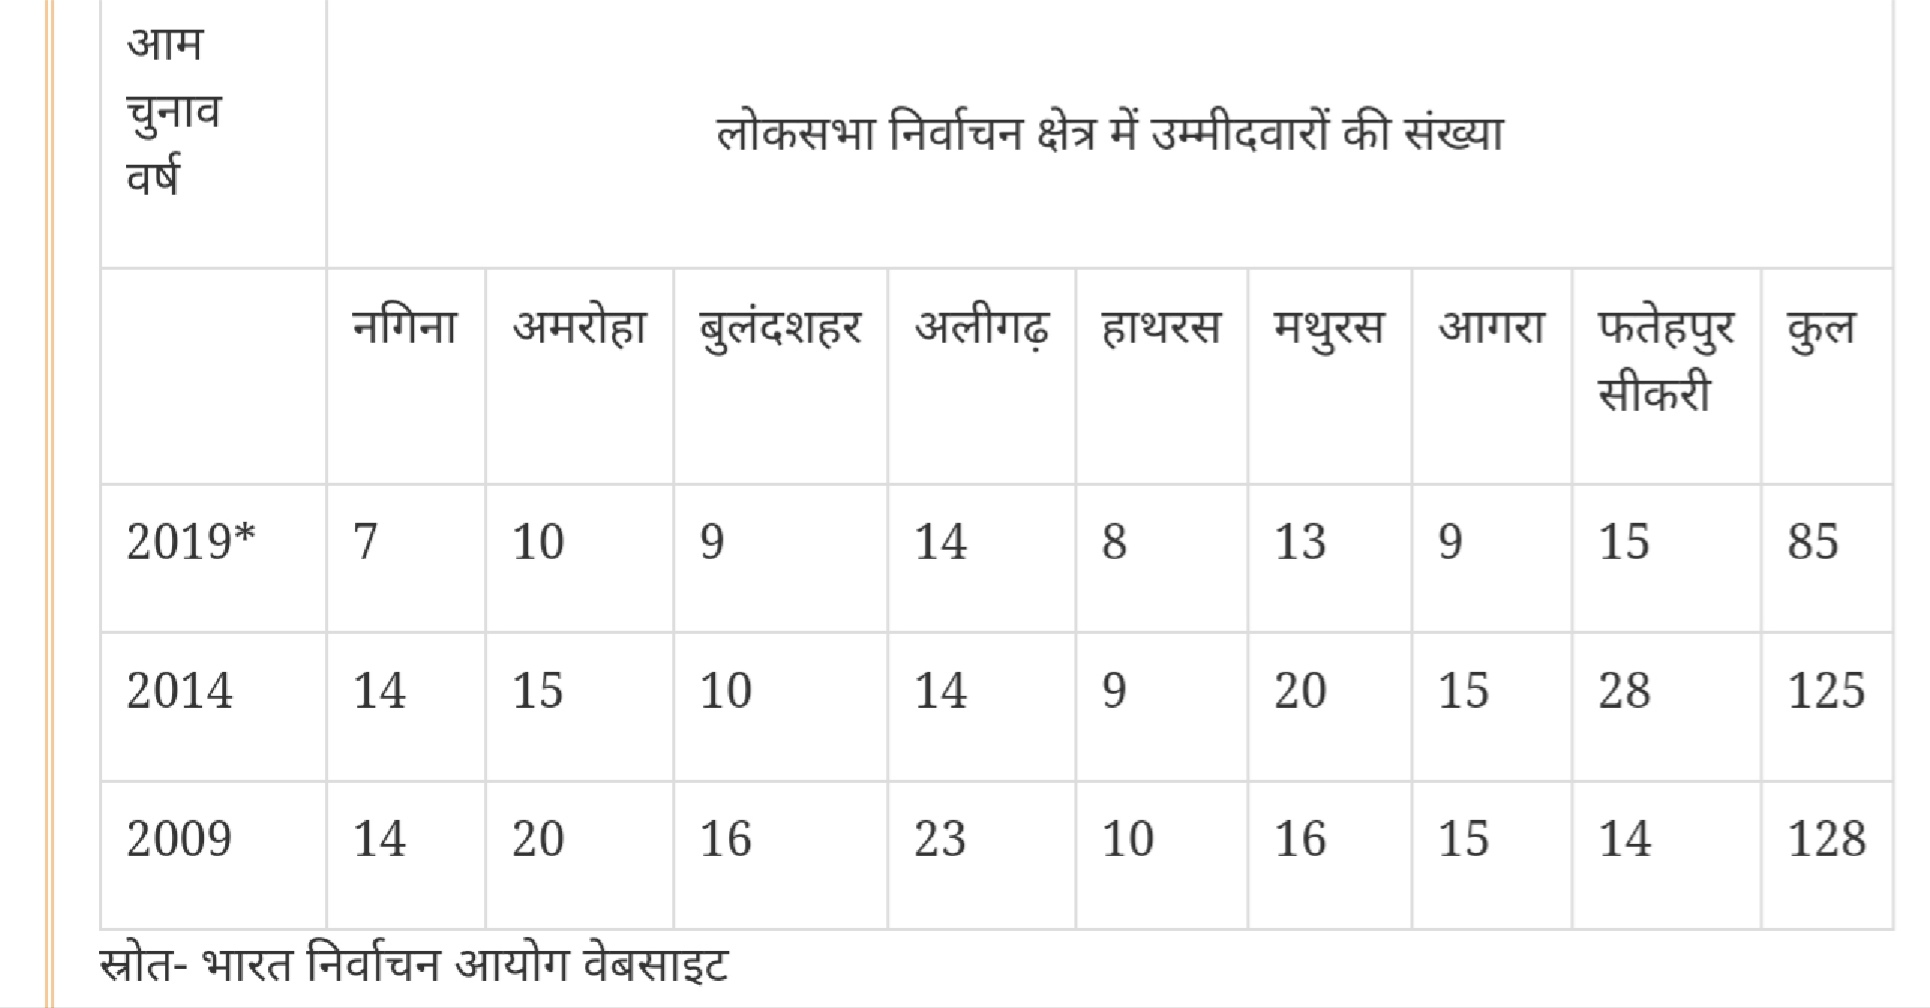 उत्तर प्रदेश की 8 लोकसभा सीटों के लिए दूसरे चरण में 85 उम्मीदवार मैदान में